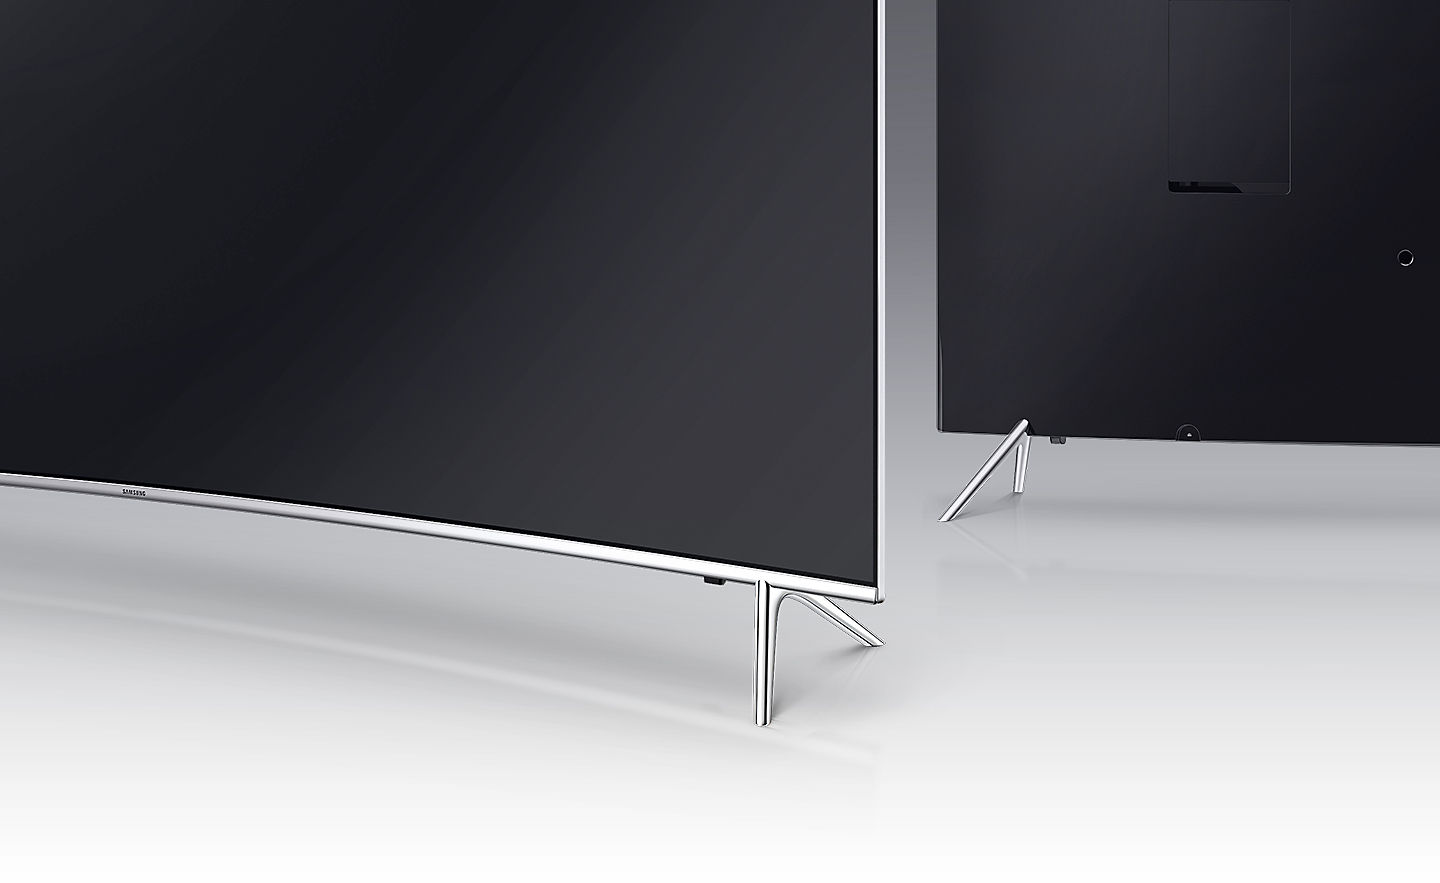 60 Suhd 4k Flat Smart Tv Ks8000 Series 8